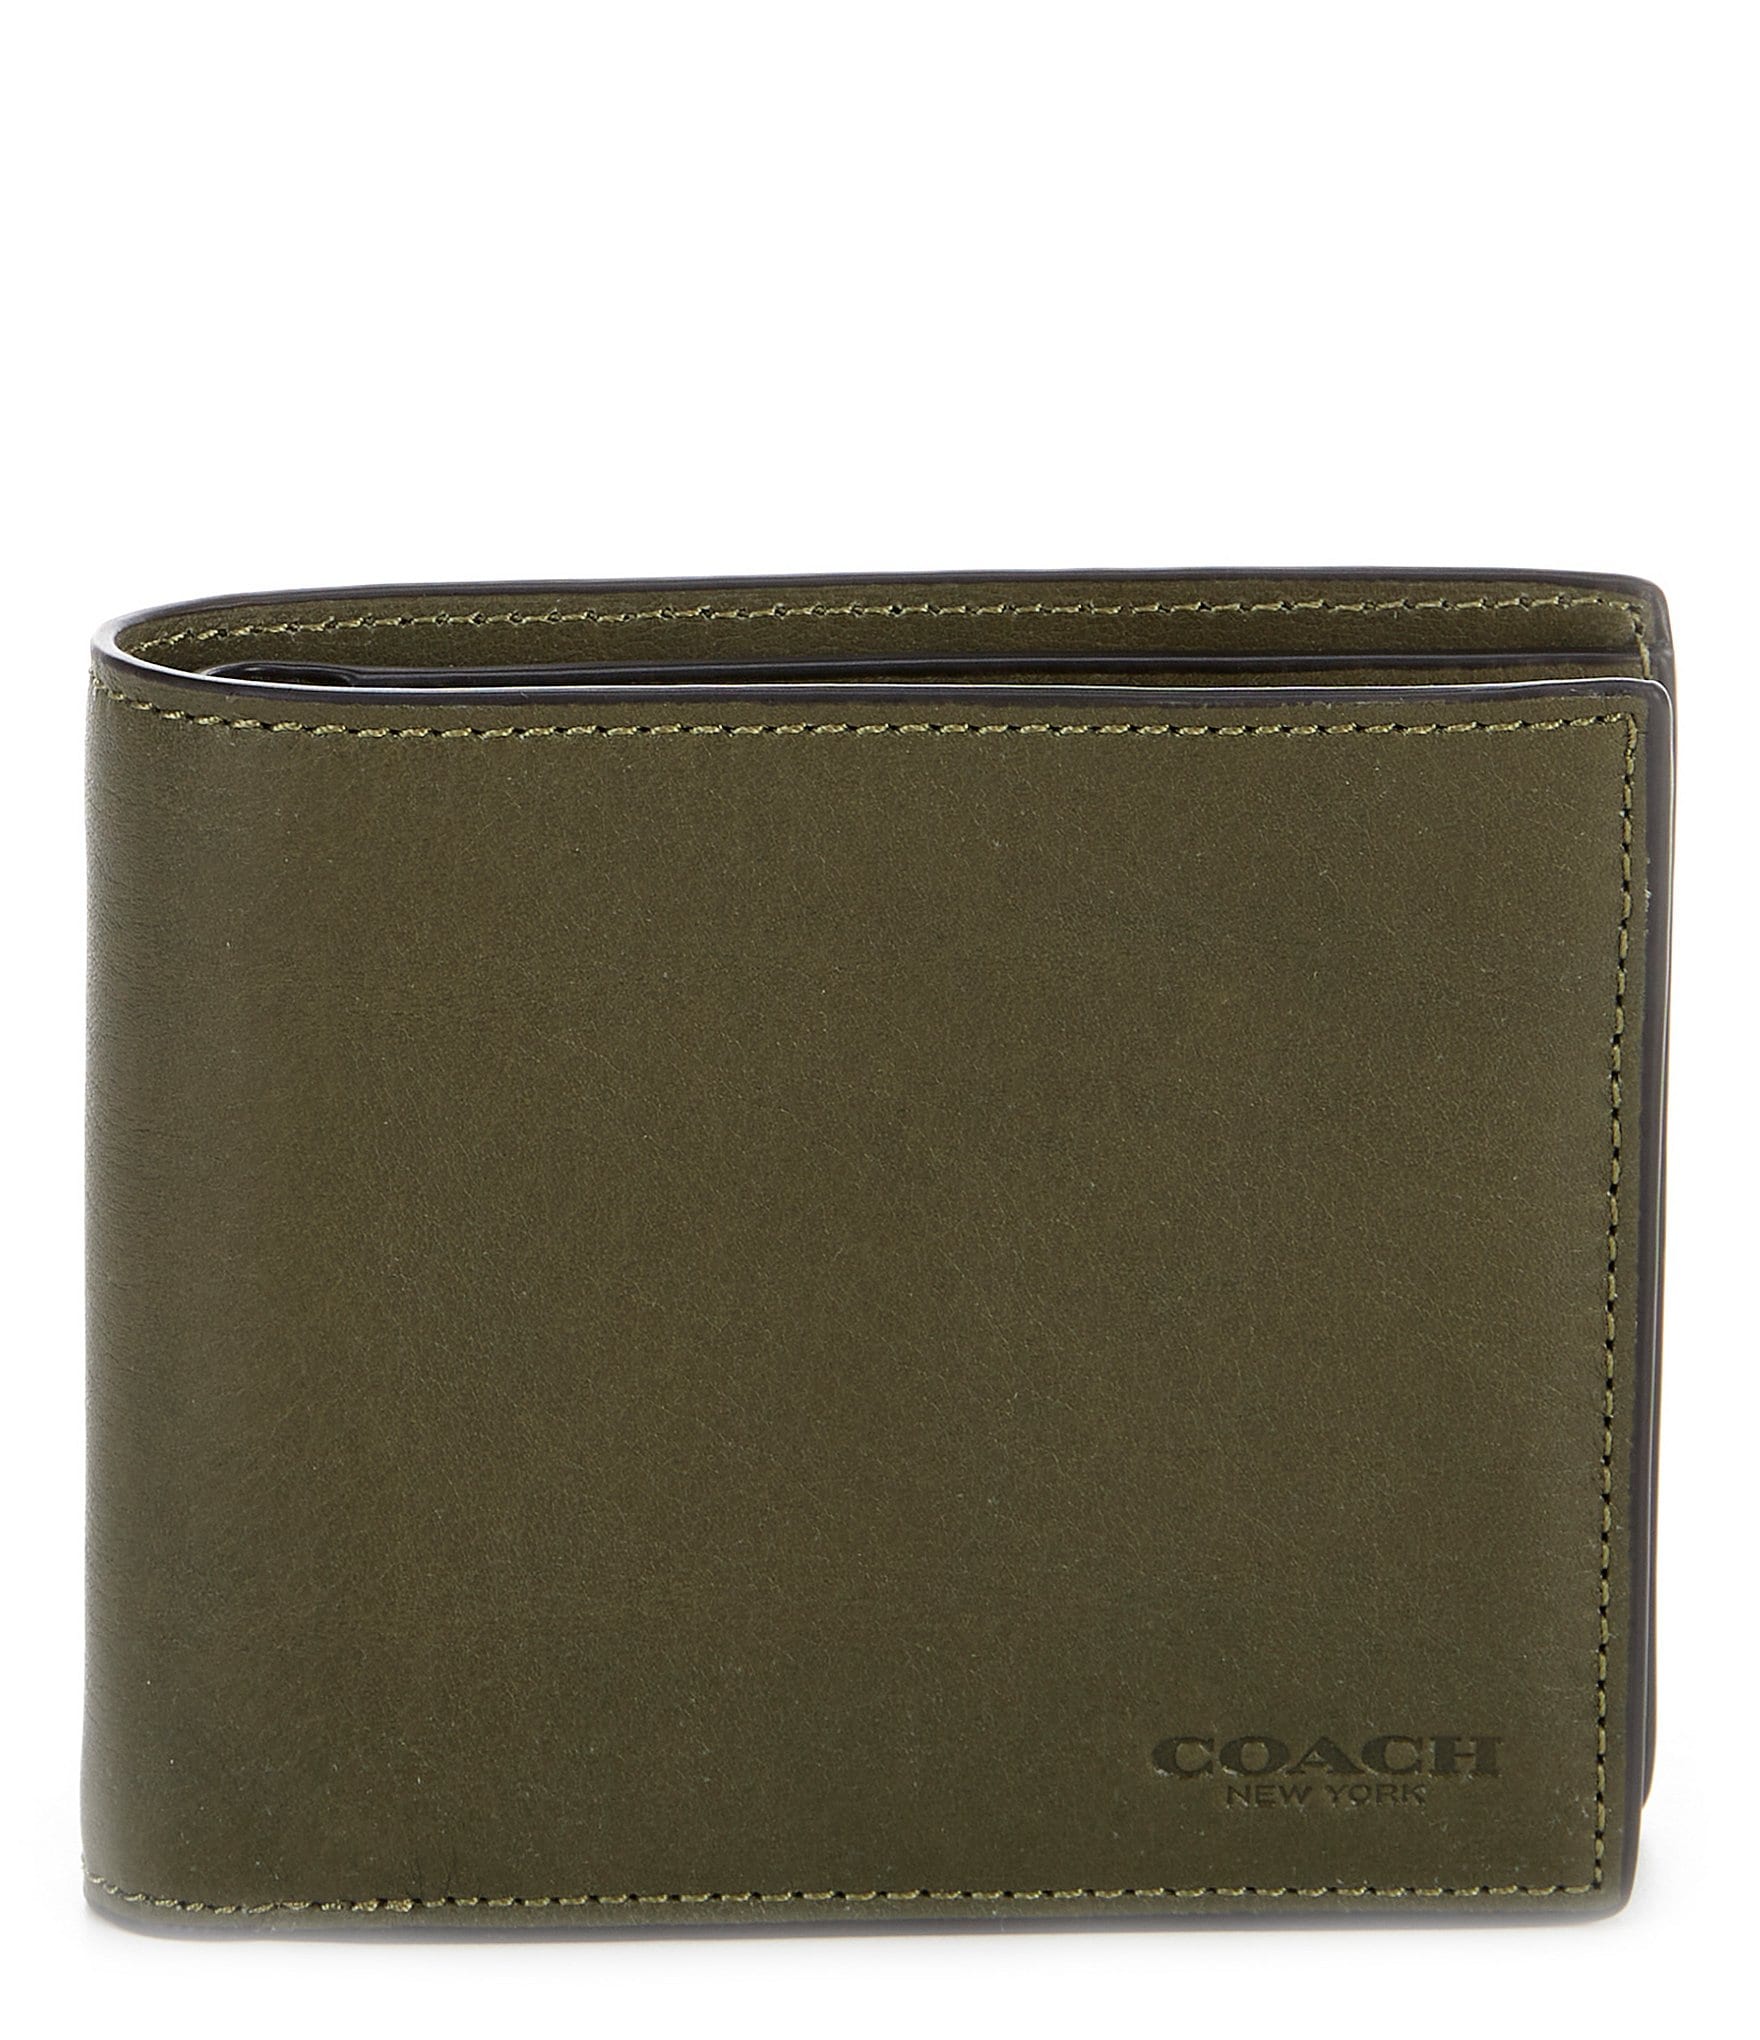 Coach Men's 3-IN-1 Sport Calf Leather Wallet | Dillard's